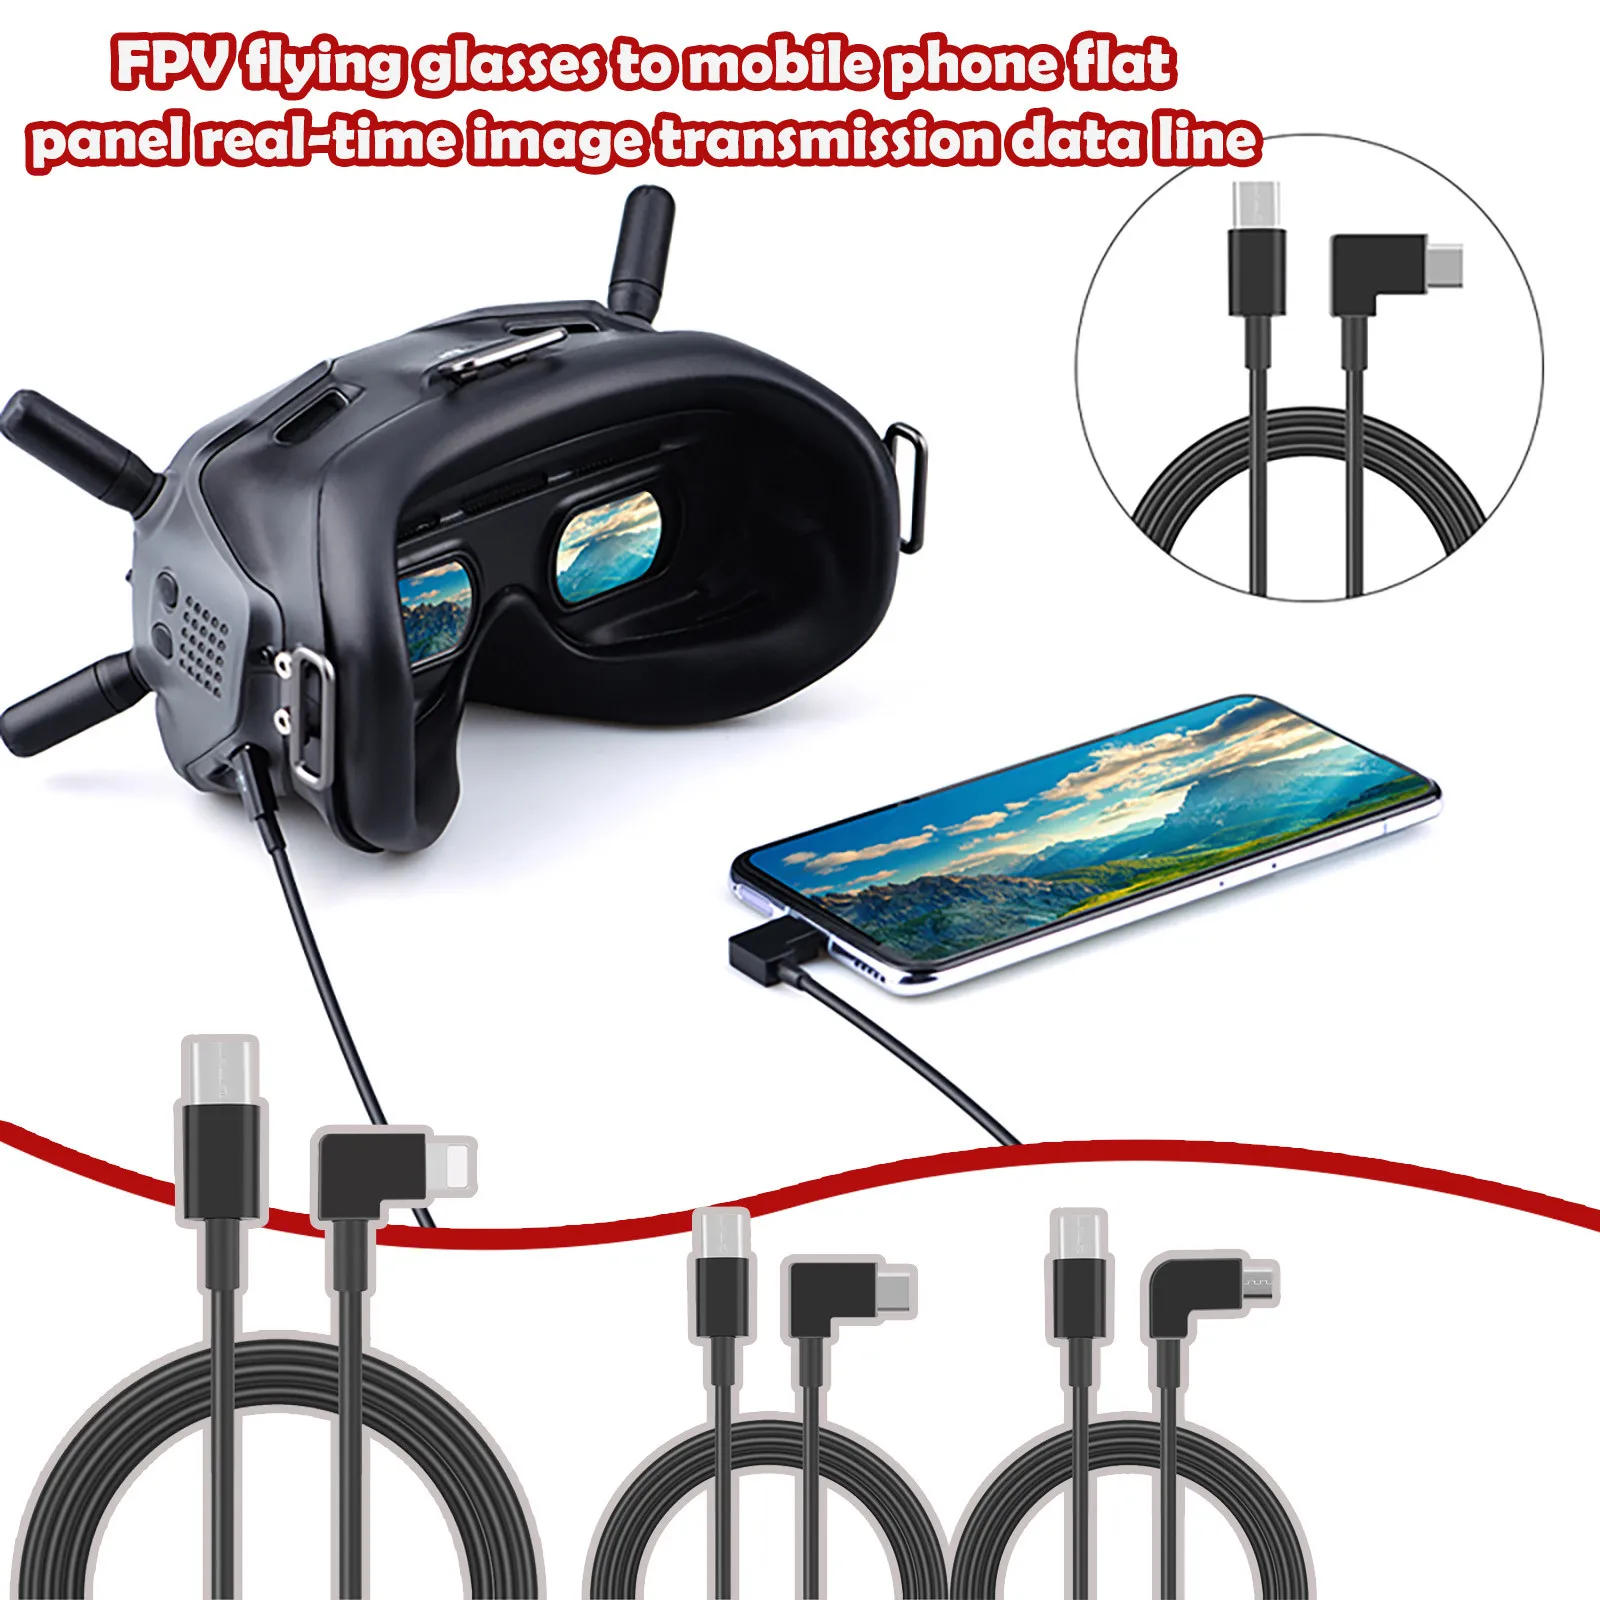 Pour DJI FPV Flight Glasses v2 Téléphone Tablet Câble de données Micro-USB Type C-Direction